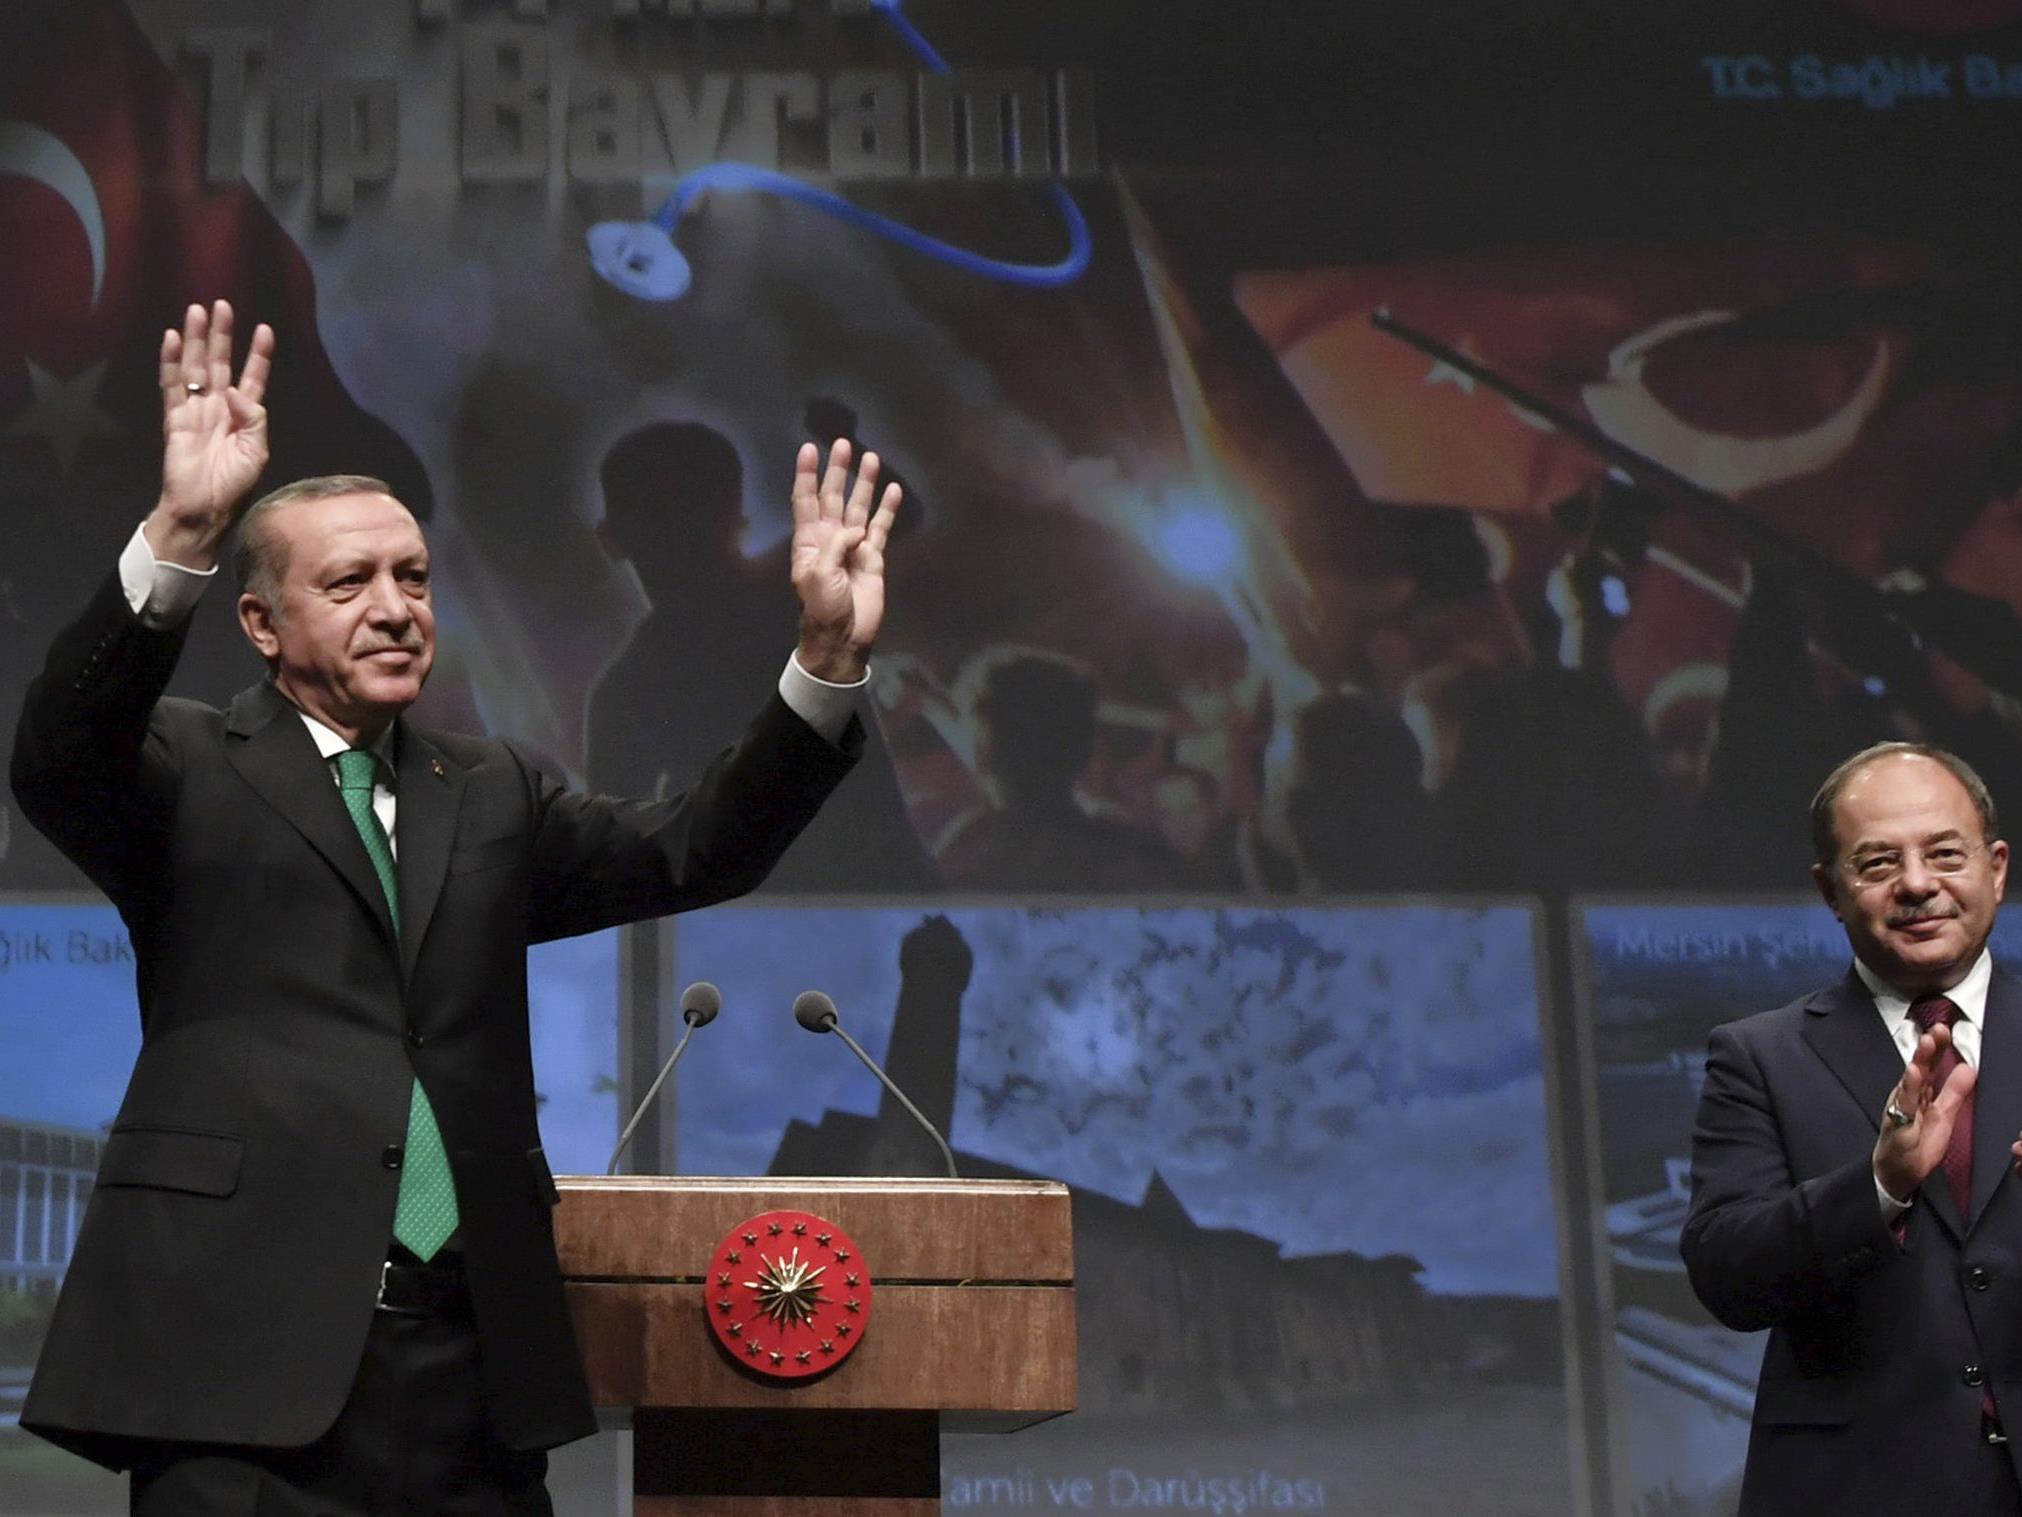 Der türkische Präsident Erdogan bei einer Veranstaltung in seinem Palast in Ankara.